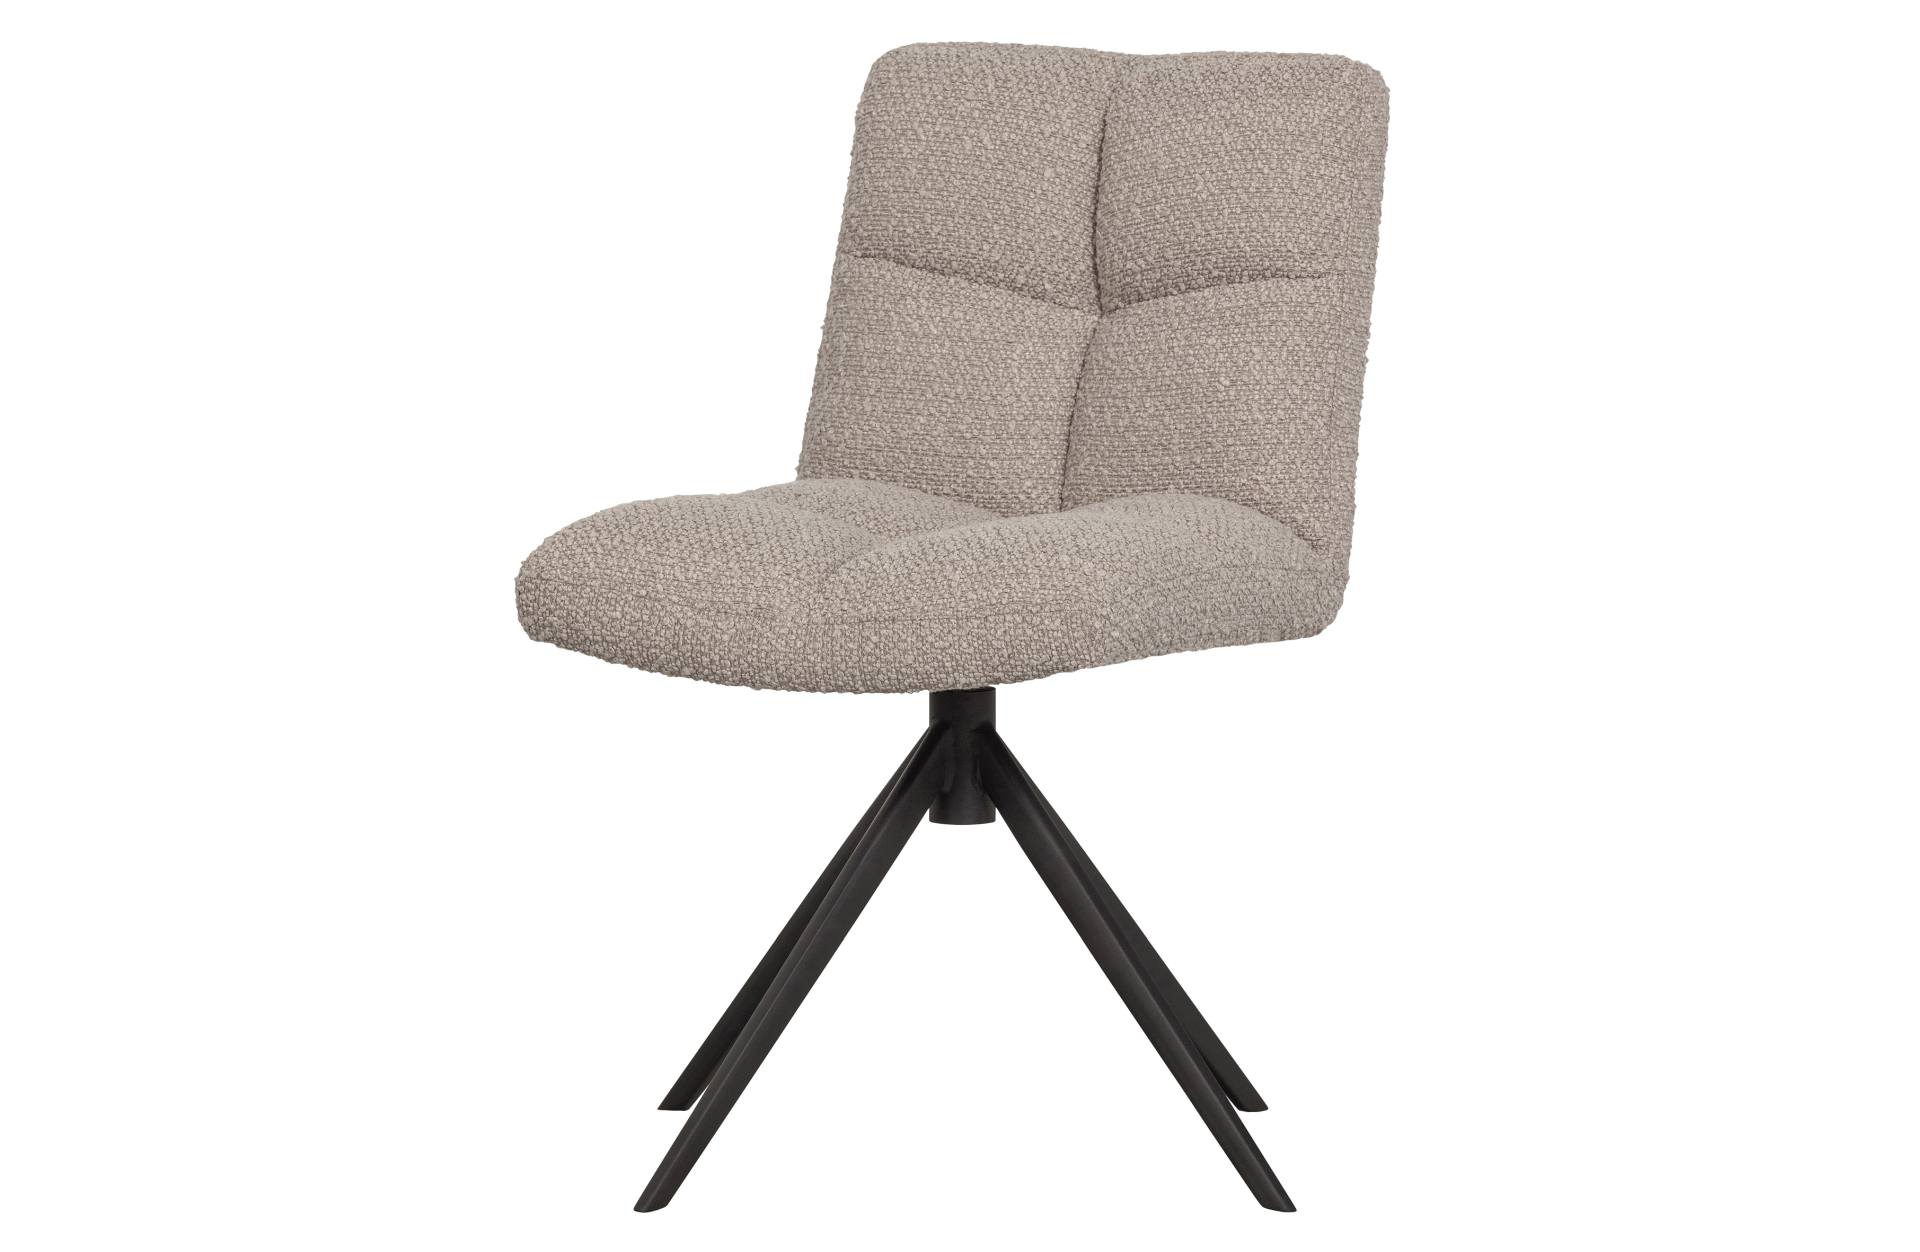 Der Esszimmerstuhl Vinny überzeugt mit seinem modernem Design. Gefertigt wurde der Stuhl aus einem Boucle Stoff, welcher einen Sand Farbton besitzt. Das Gestell ist aus Metall und hat eine schwarze Farbe.